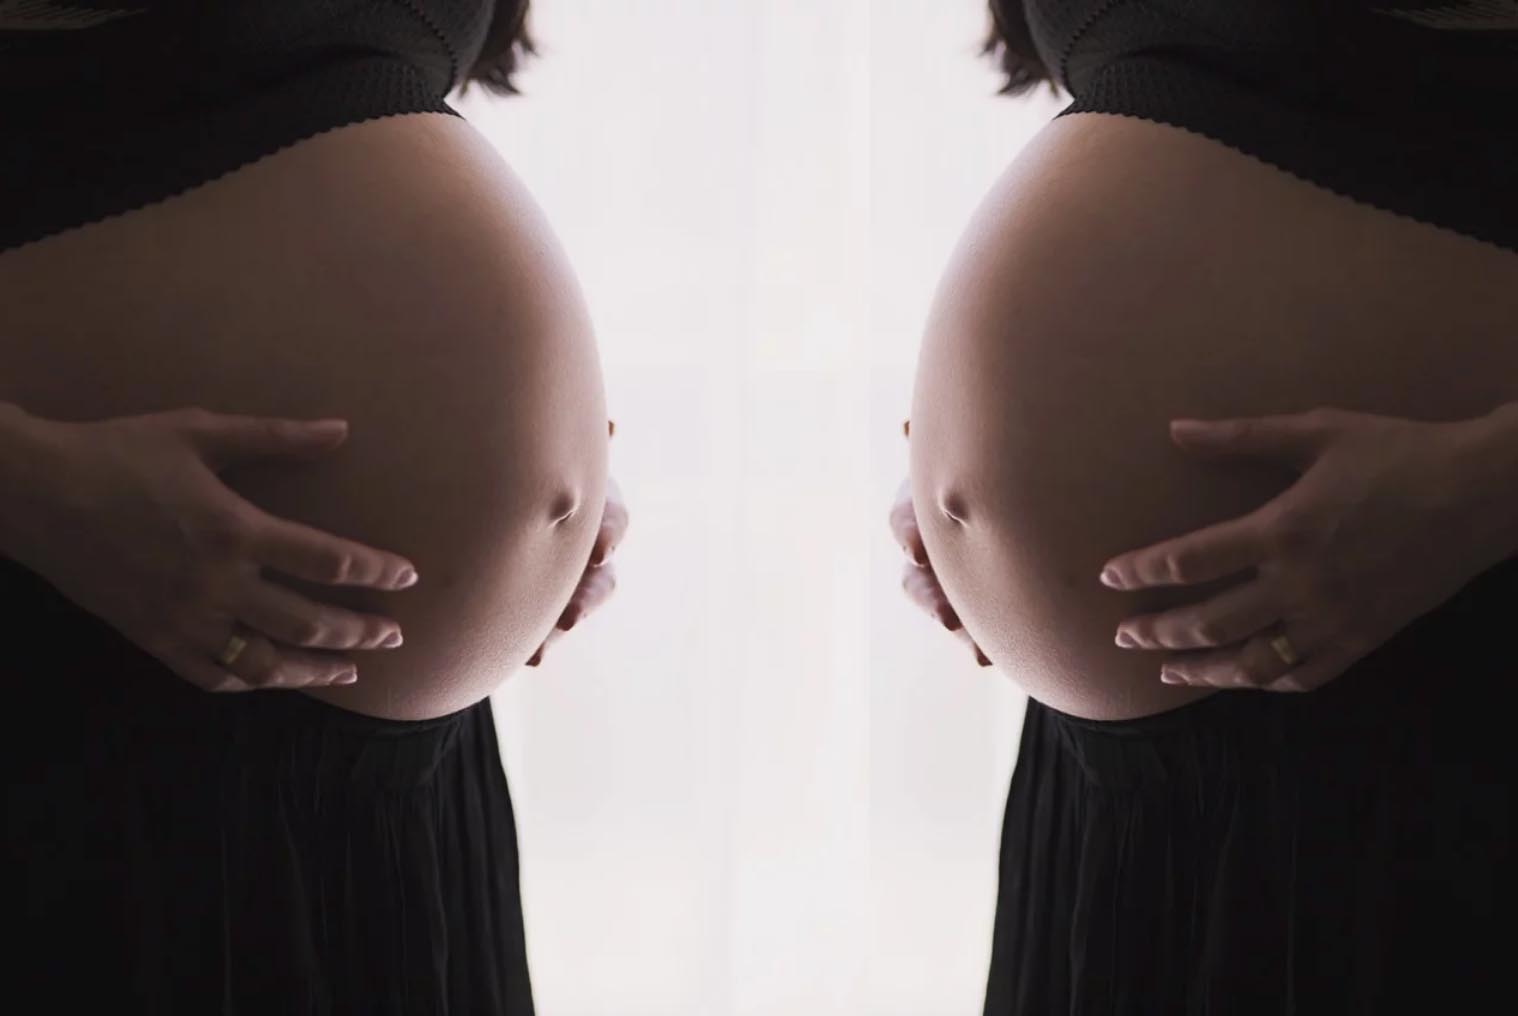 Nasce il primo figlio da “gravidanza condivisa”. Ma il padre dov’è? 1